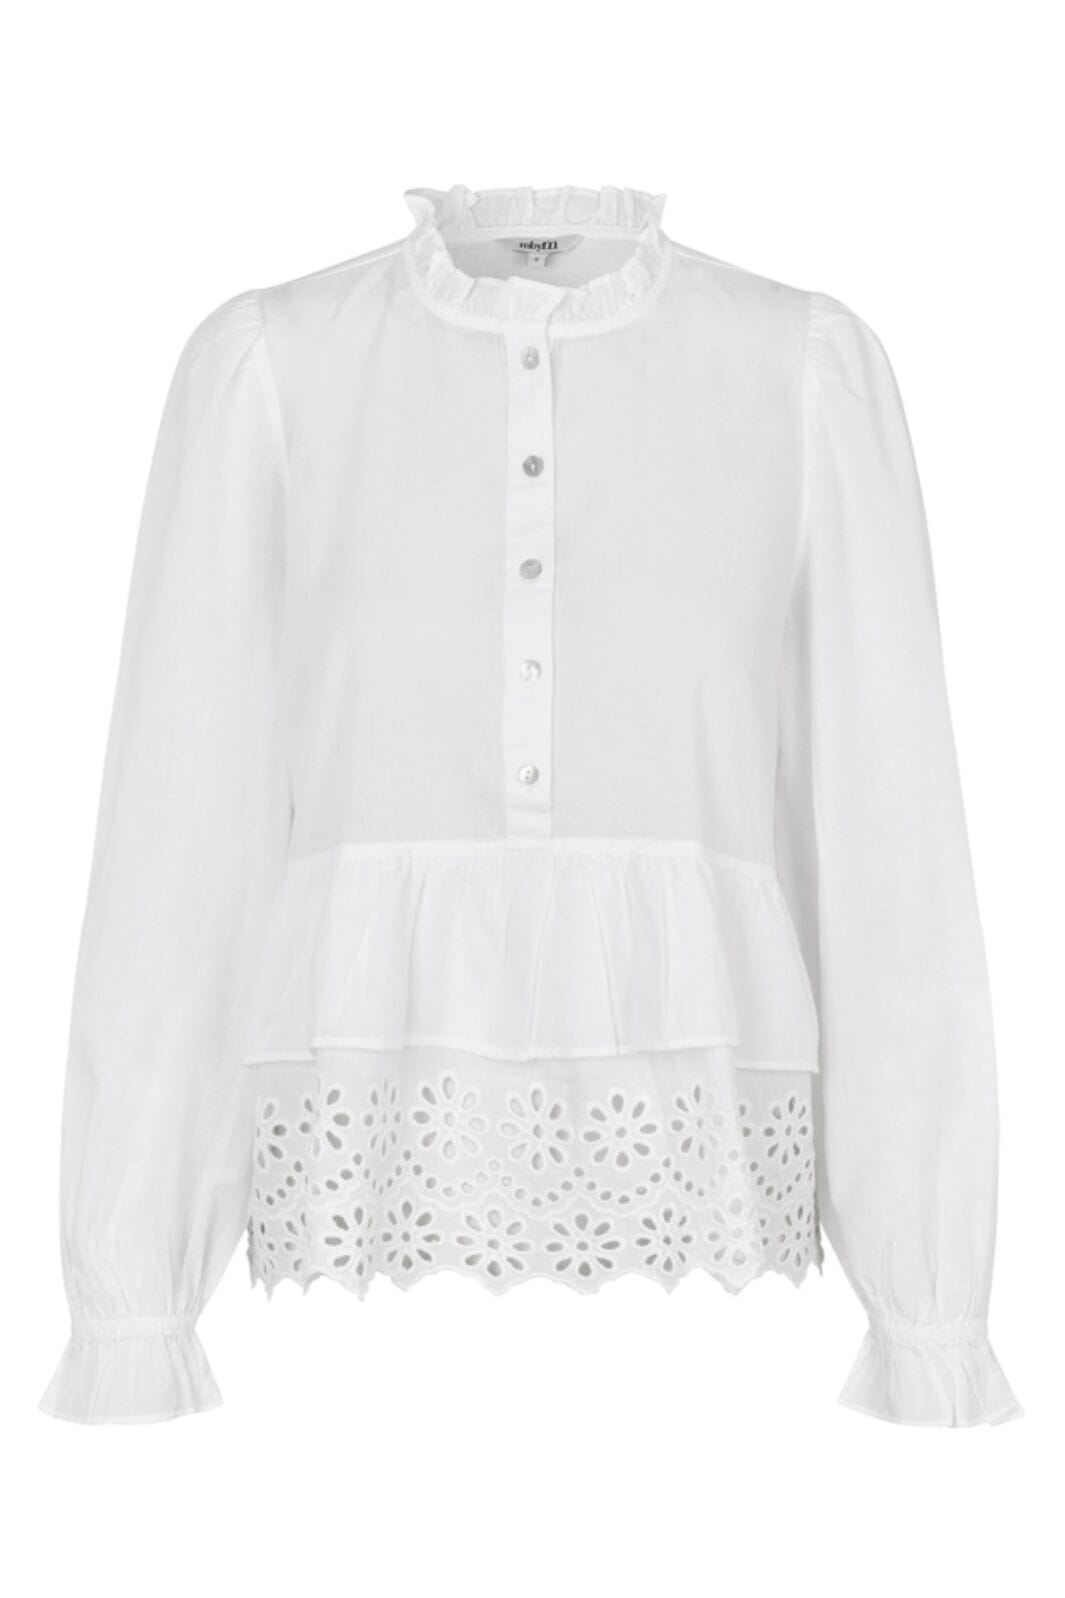 Mbym - Azam-M - 800 White Skjorter 